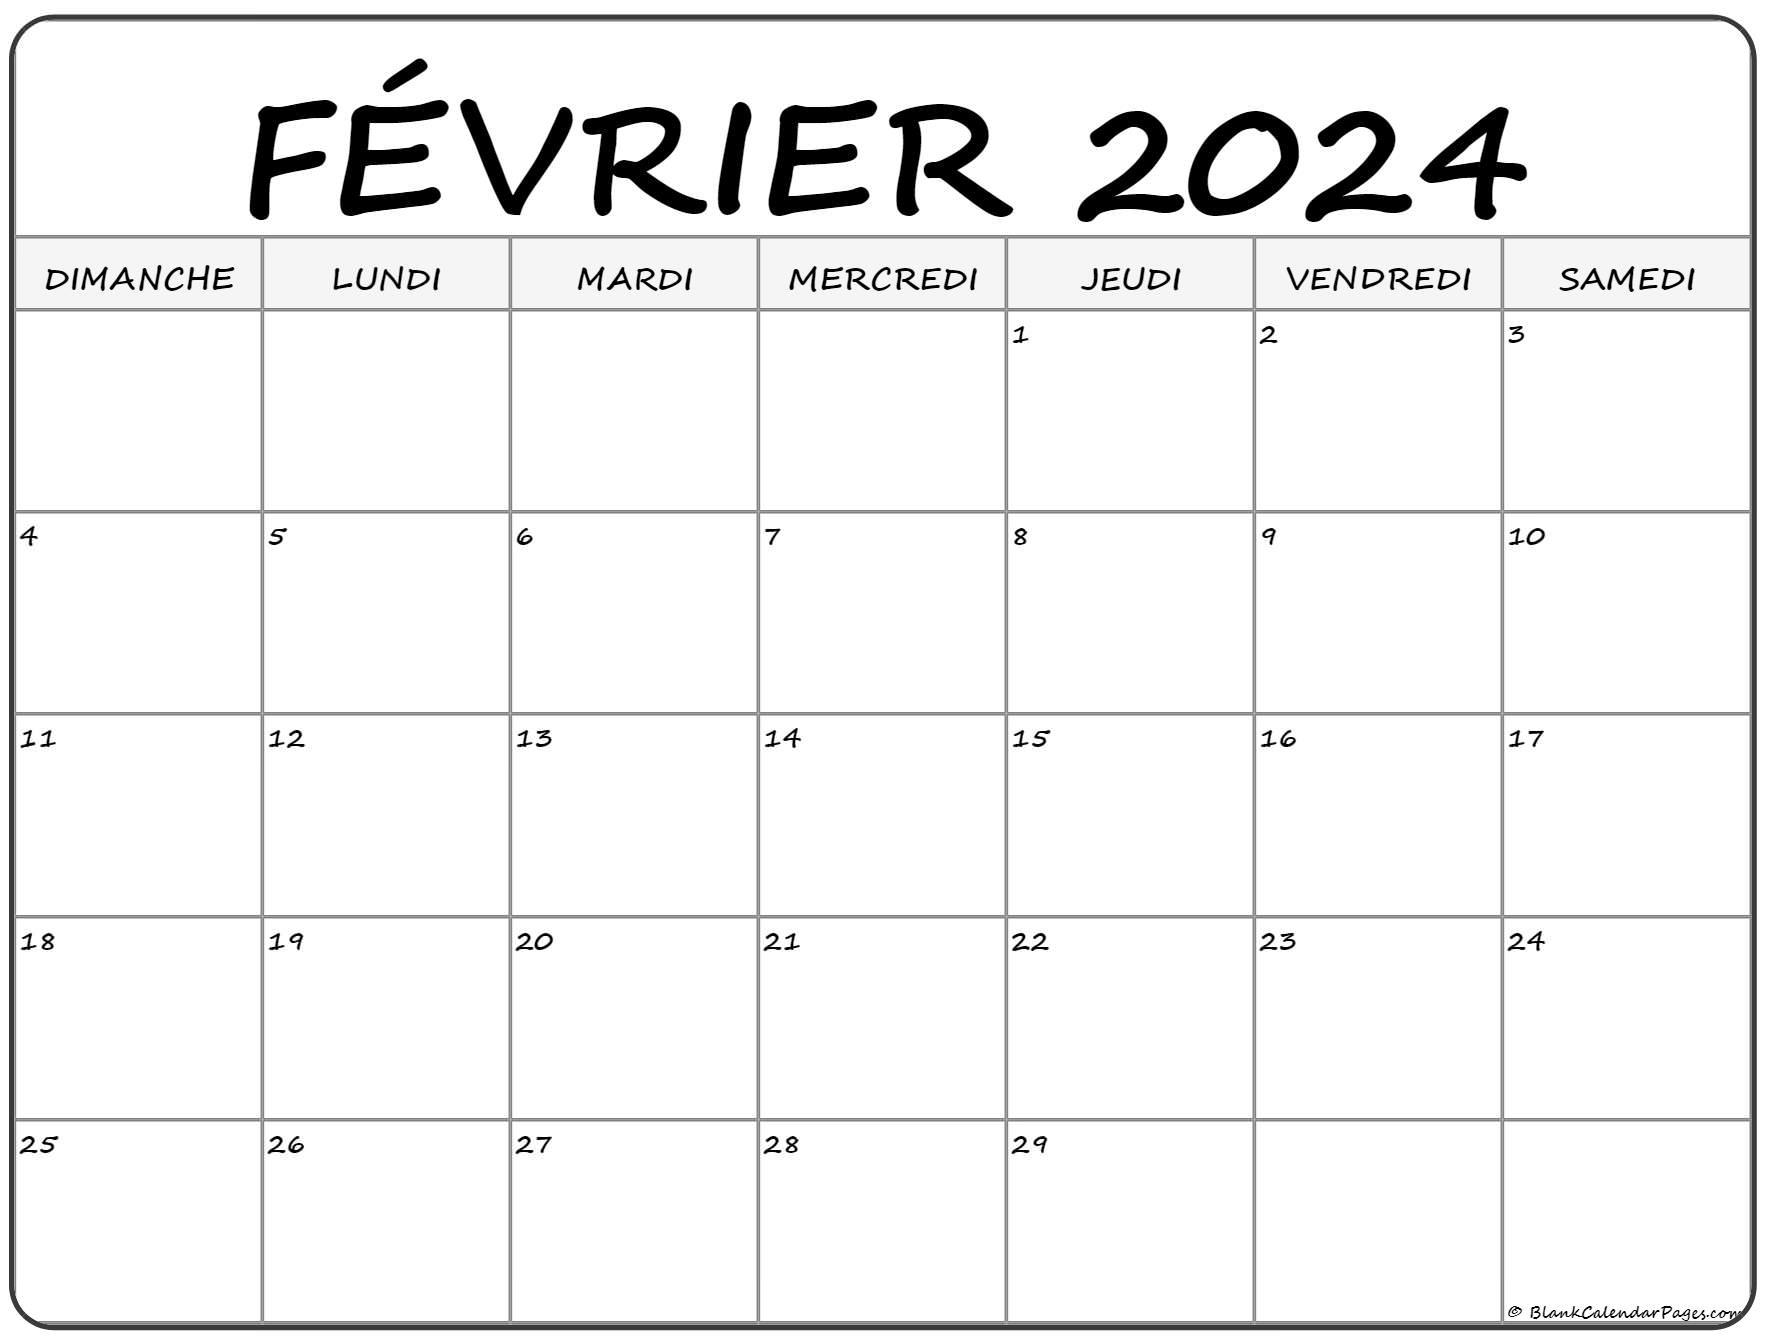 Février 2022 Calendrier février 2022 calendrier imprimable | Calendrier gratuit